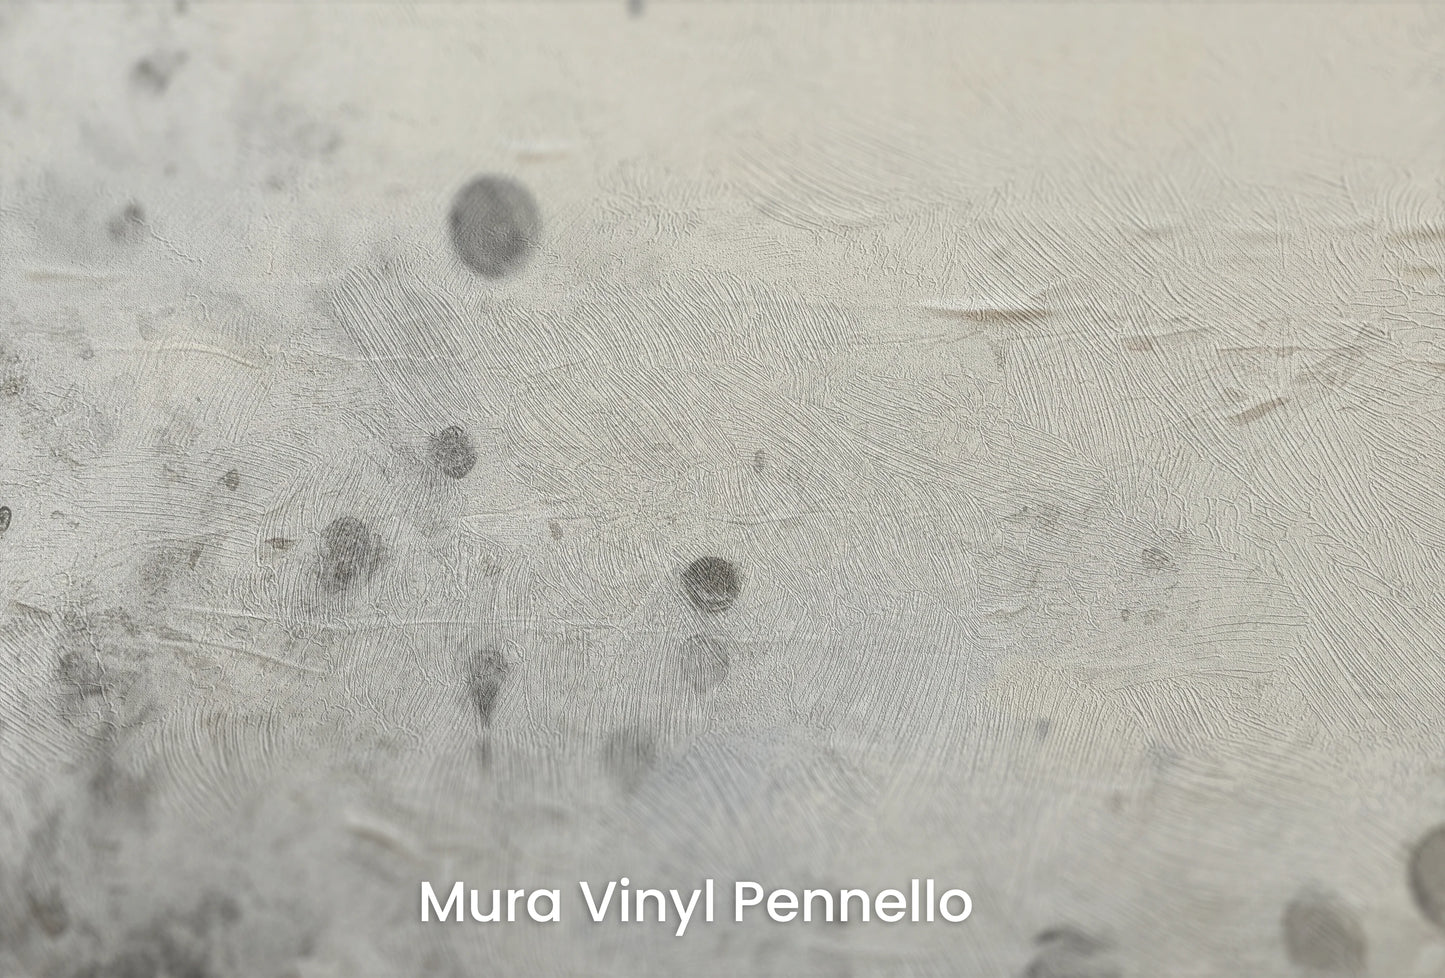 Zbliżenie na artystyczną fototapetę o nazwie Uranian Chill na podłożu Mura Vinyl Pennello - faktura pociągnięć pędzla malarskiego.